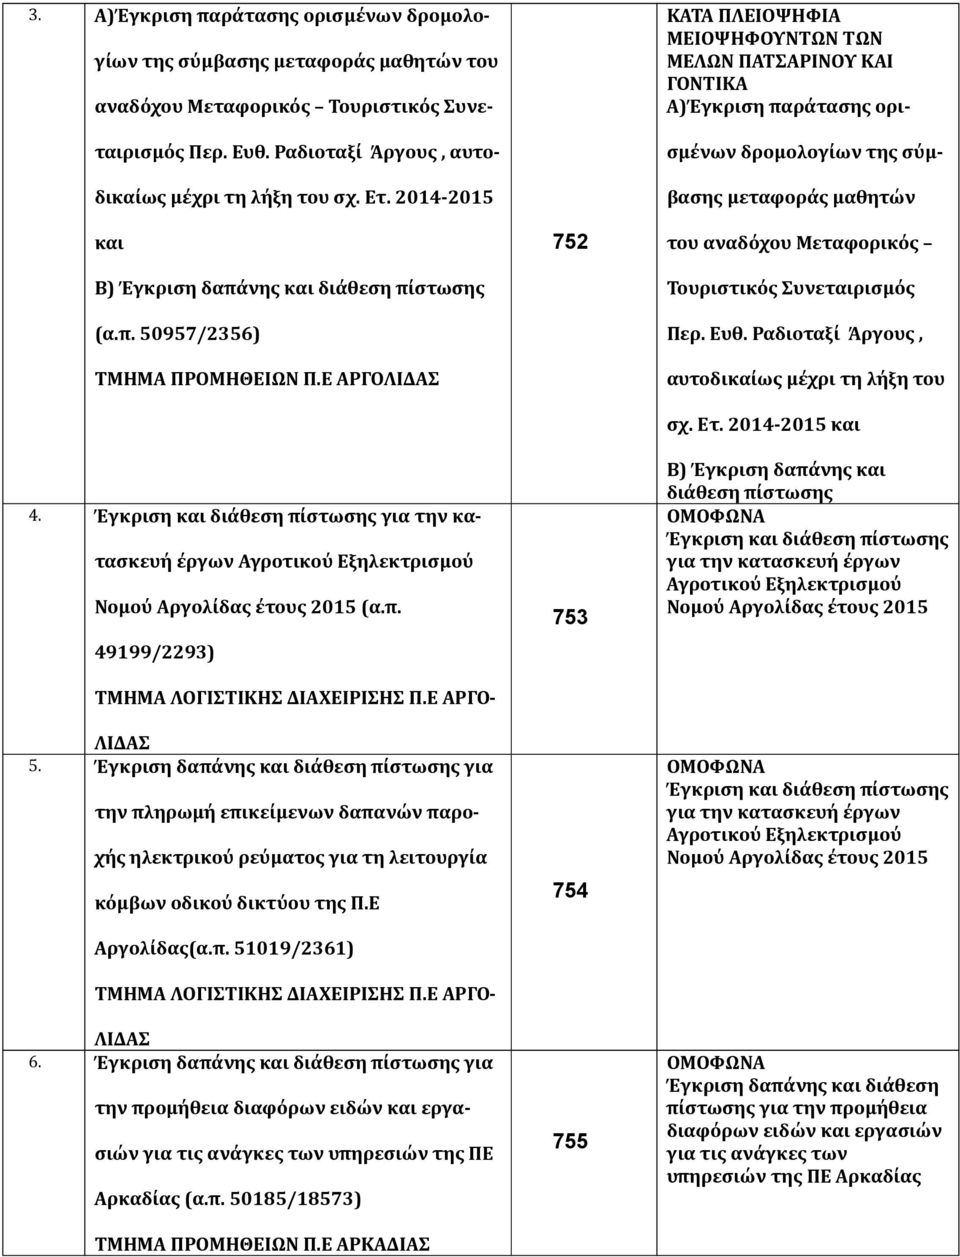 Έγκριση και διάθεση πίστωσης για την κατασκευή έργων Αγροτικού Εξηλεκτρισμού Νομού Αργολίδας έτους 2015 (α.π. 49199/2293) ΤΜΗΜΑ ΛΟΓΙΣΤΙΚΗΣ ΔΙΑΧΕΙΡΙΣΗΣ Π.Ε ΑΡΓΟ- ΛΙΔΑΣ 5.